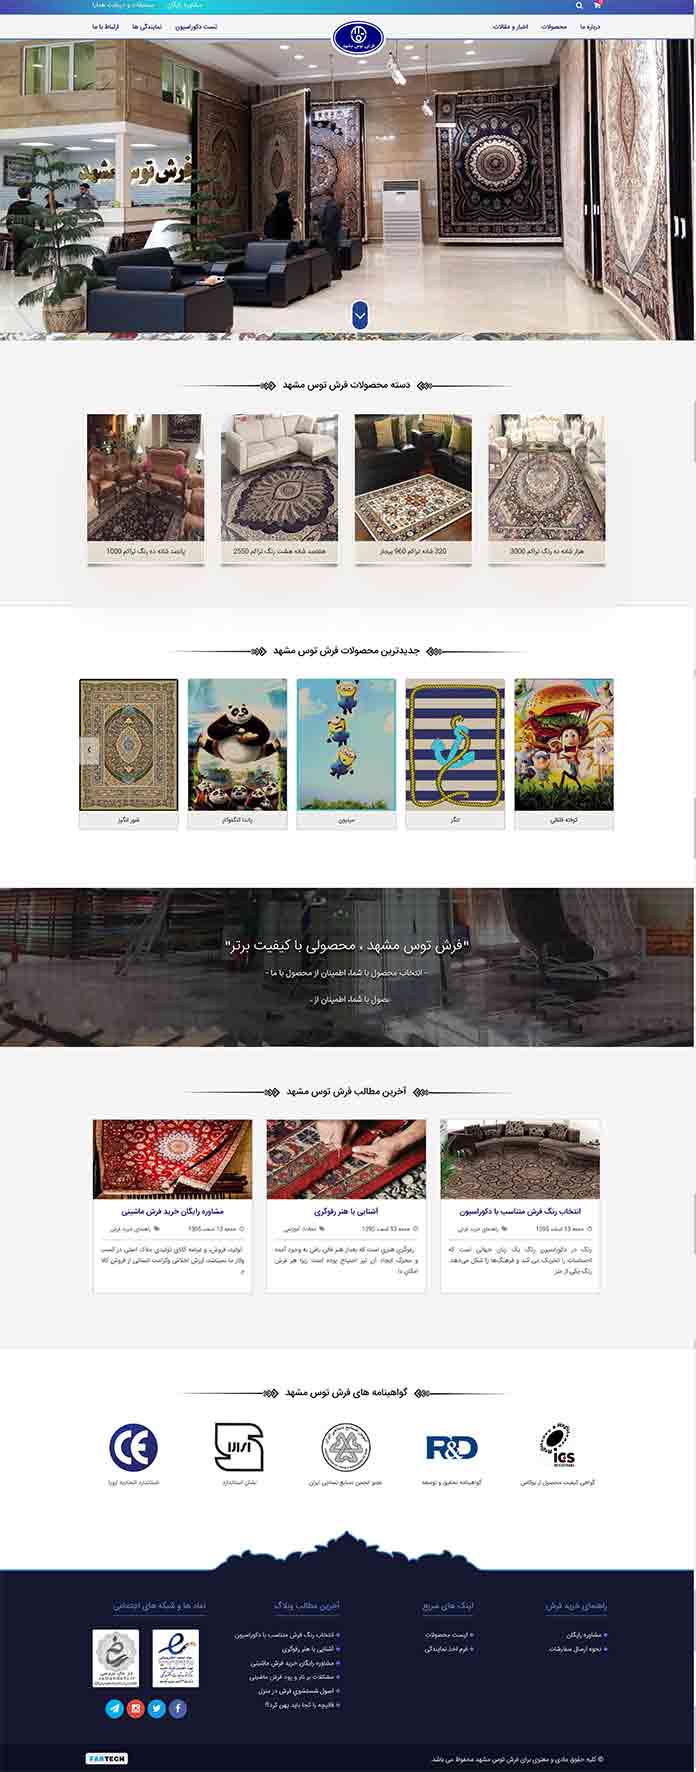 طراحی فروشگاه آنلاین فرش توس مشهد